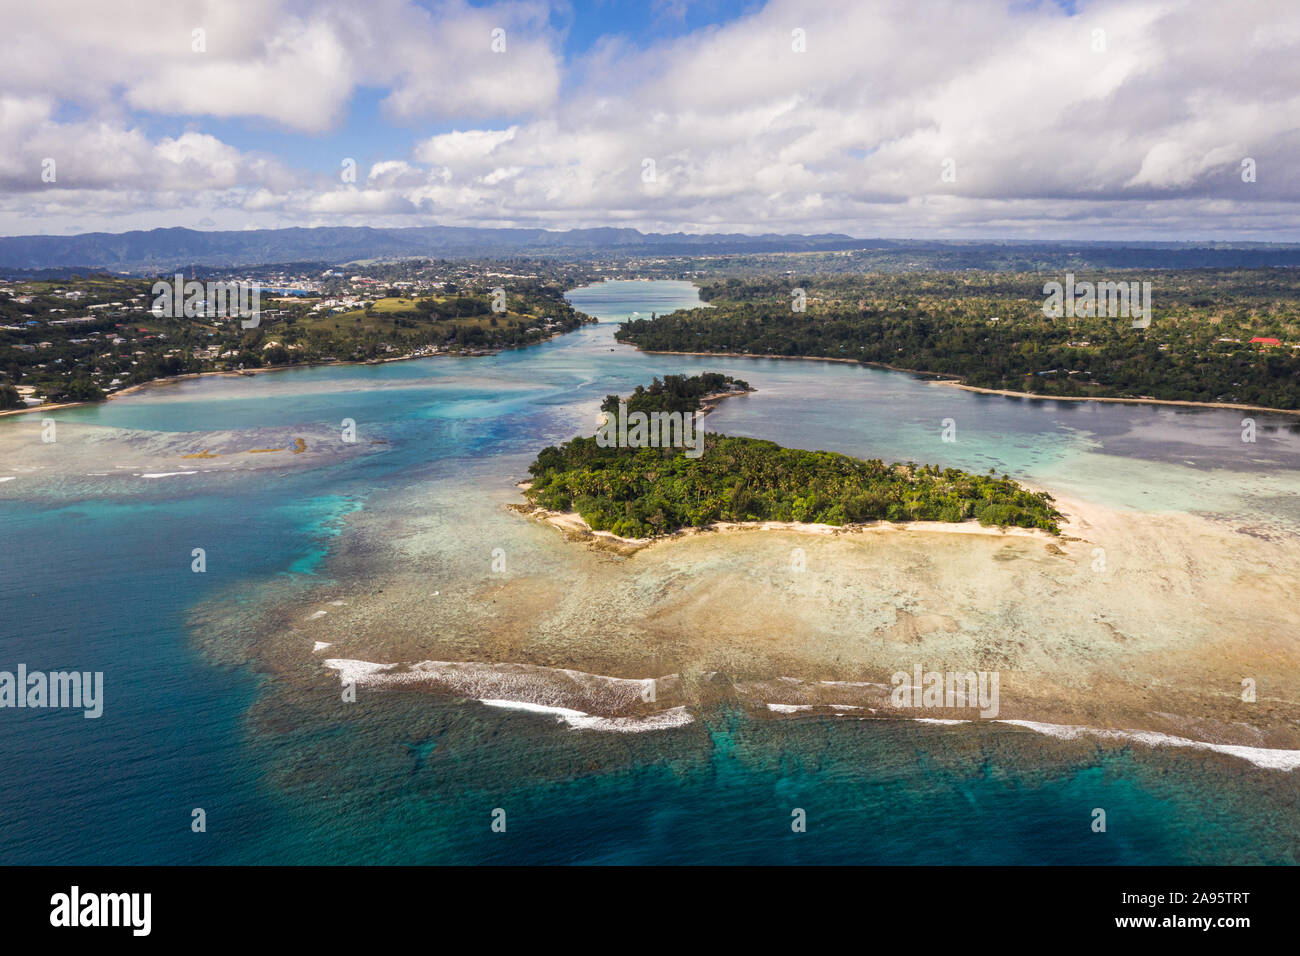 Vue aérienne de l'Iririki island dans la lagune Port Vila au Vanuatu dans le Pacifique sud Banque D'Images